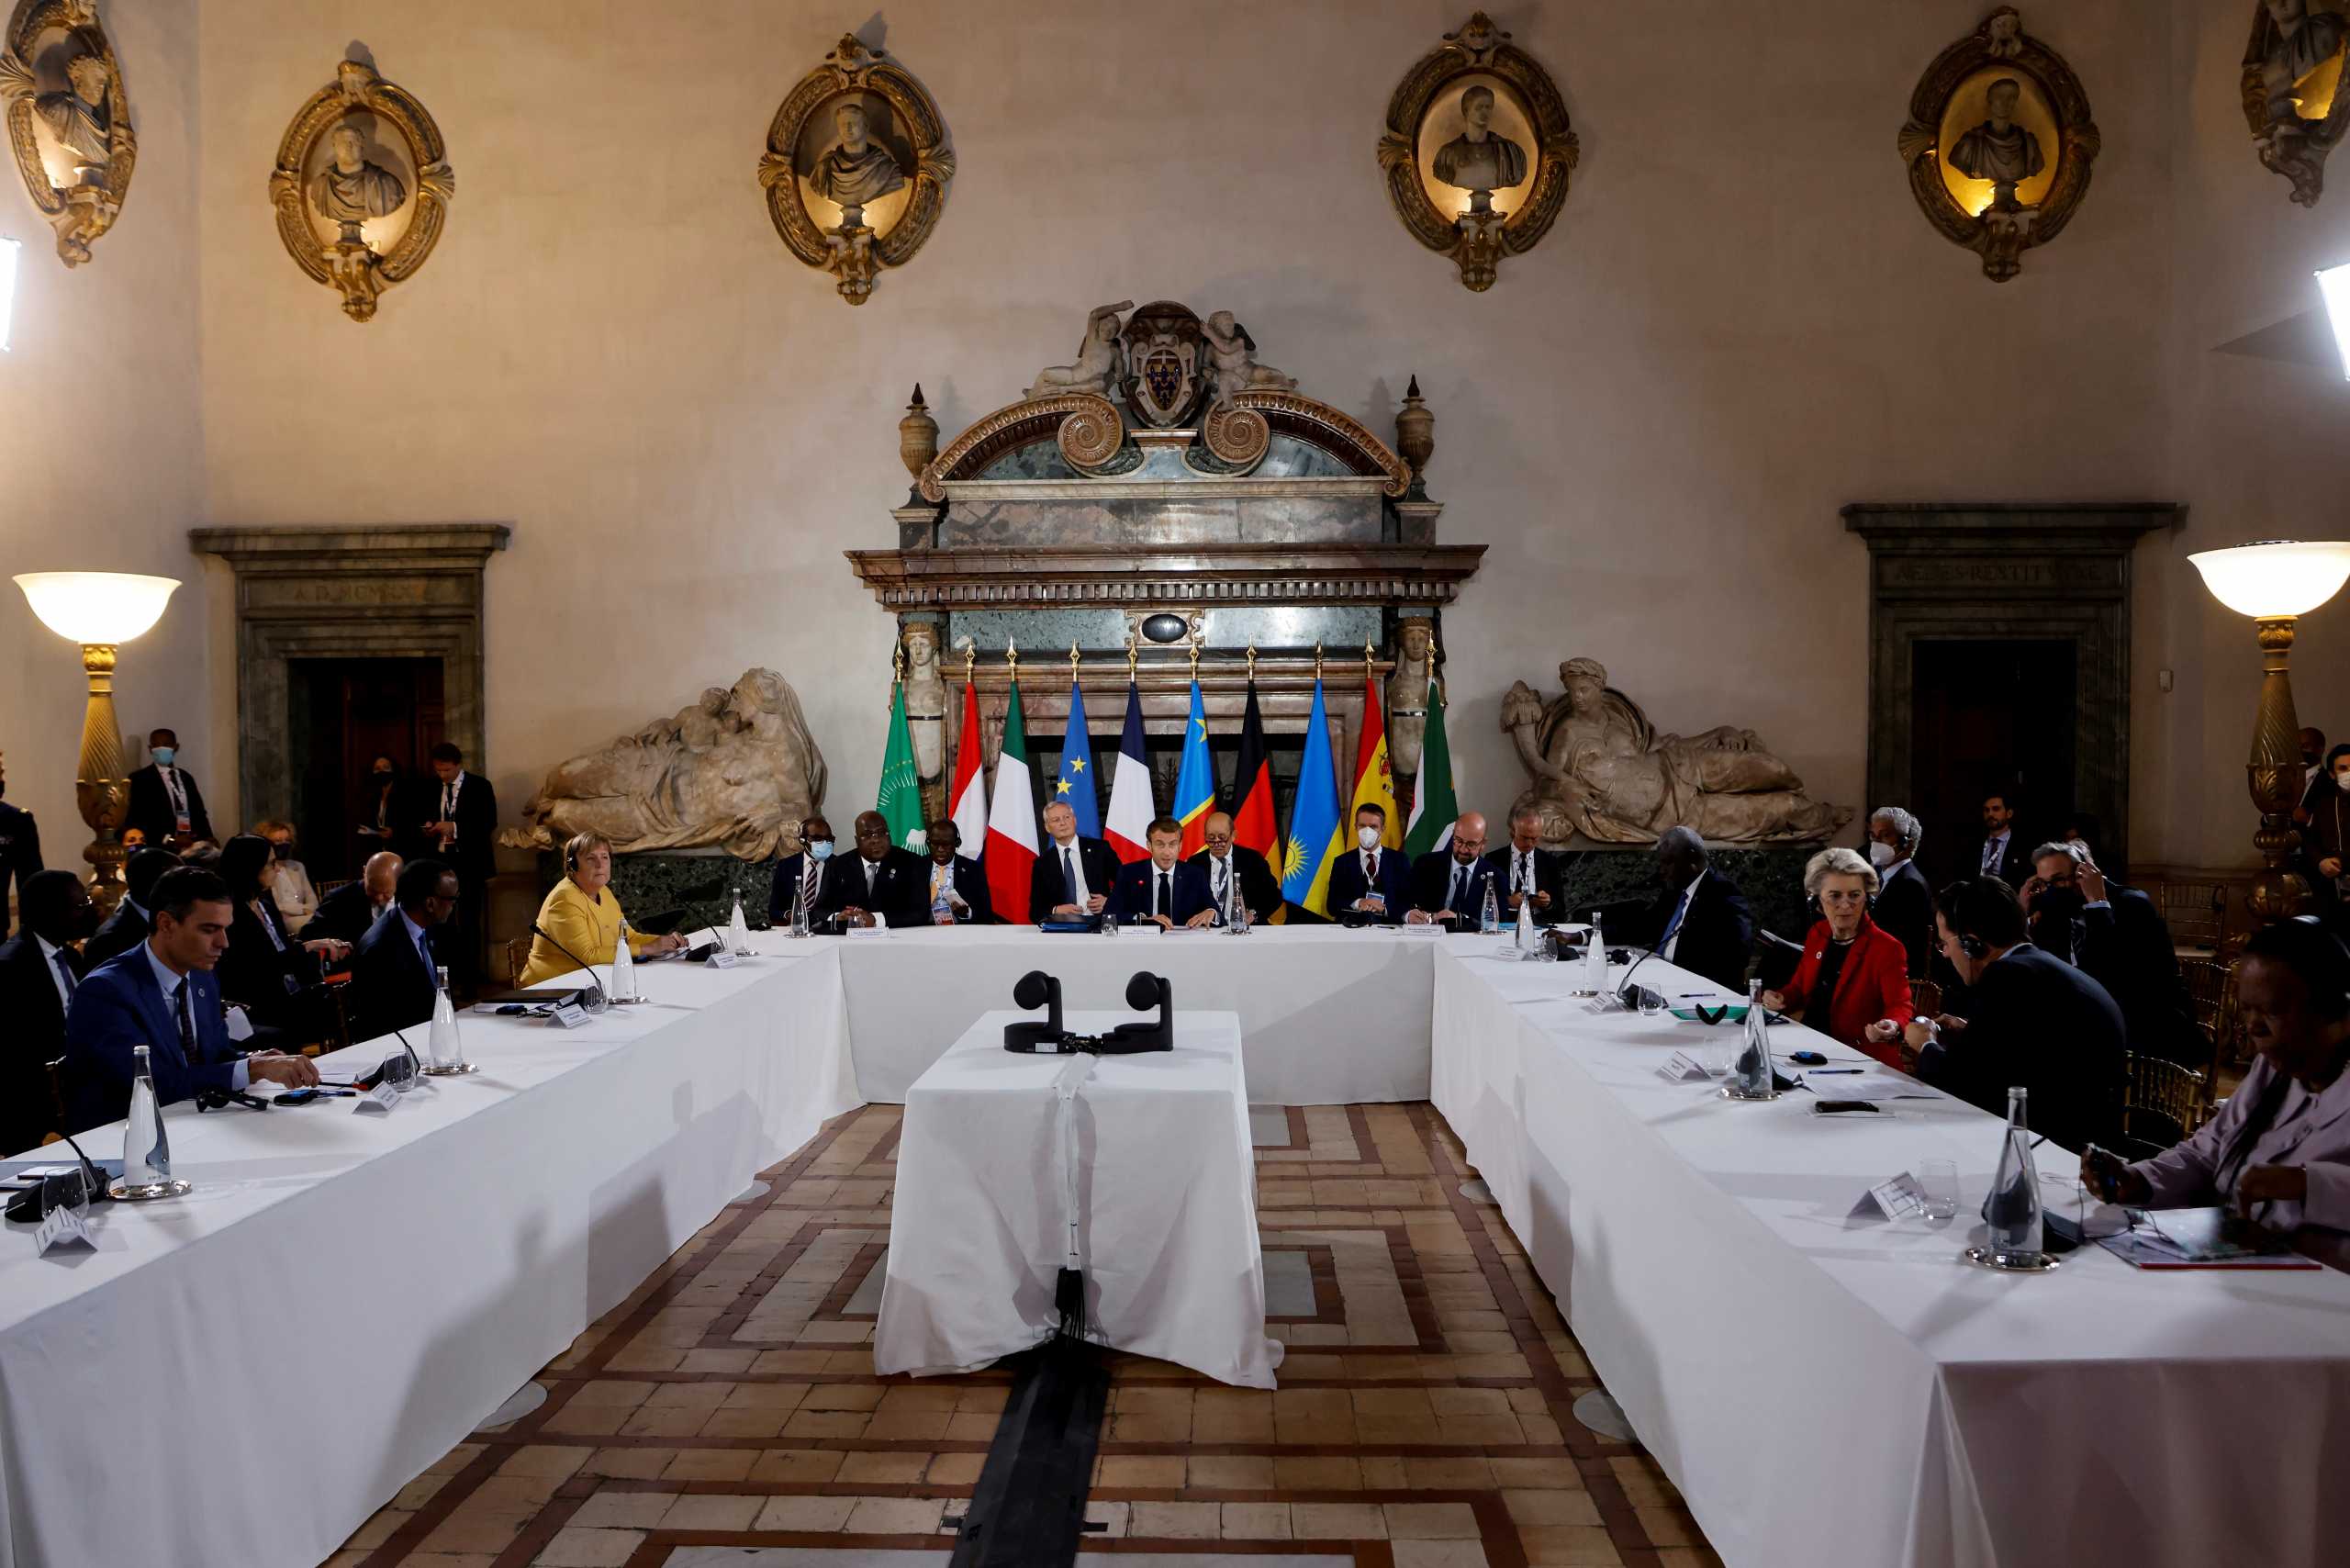 G20: Χιούμορ και πειράγματα από τους ηγέτες της Συνόδου – Ριζότο κολοκύθας  και γεμιστές αγκινάρες στο μενού